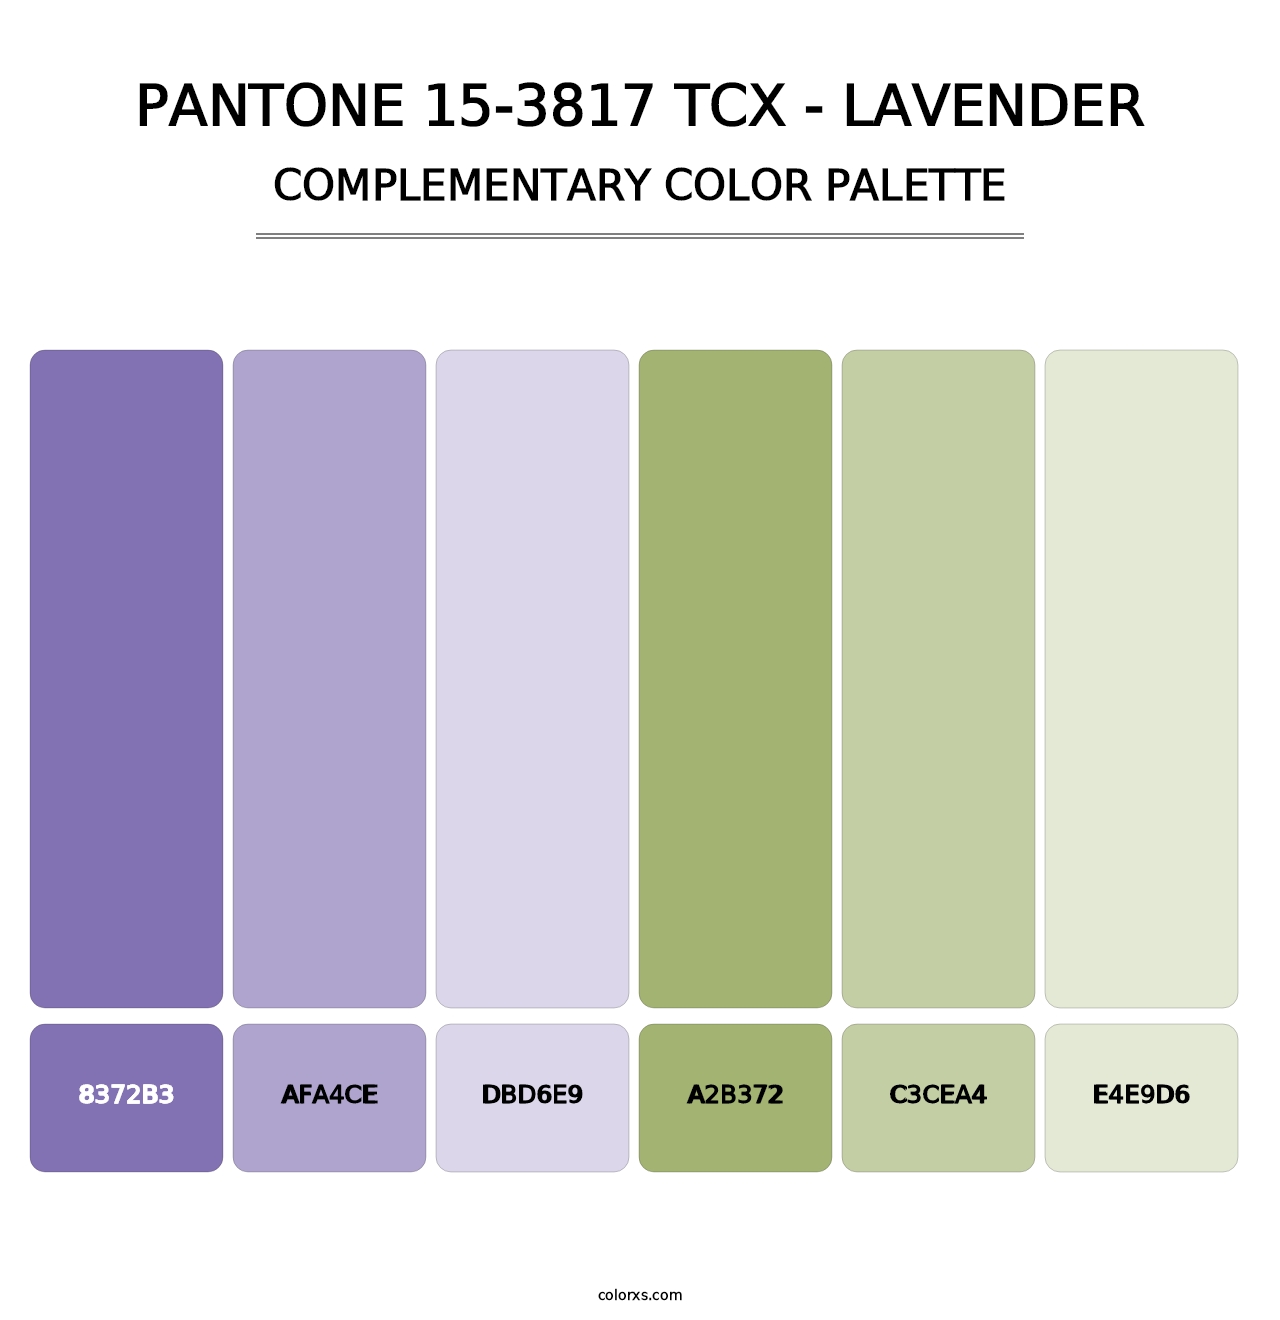 PANTONE 15-3817 TCX - Lavender - Complementary Color Palette